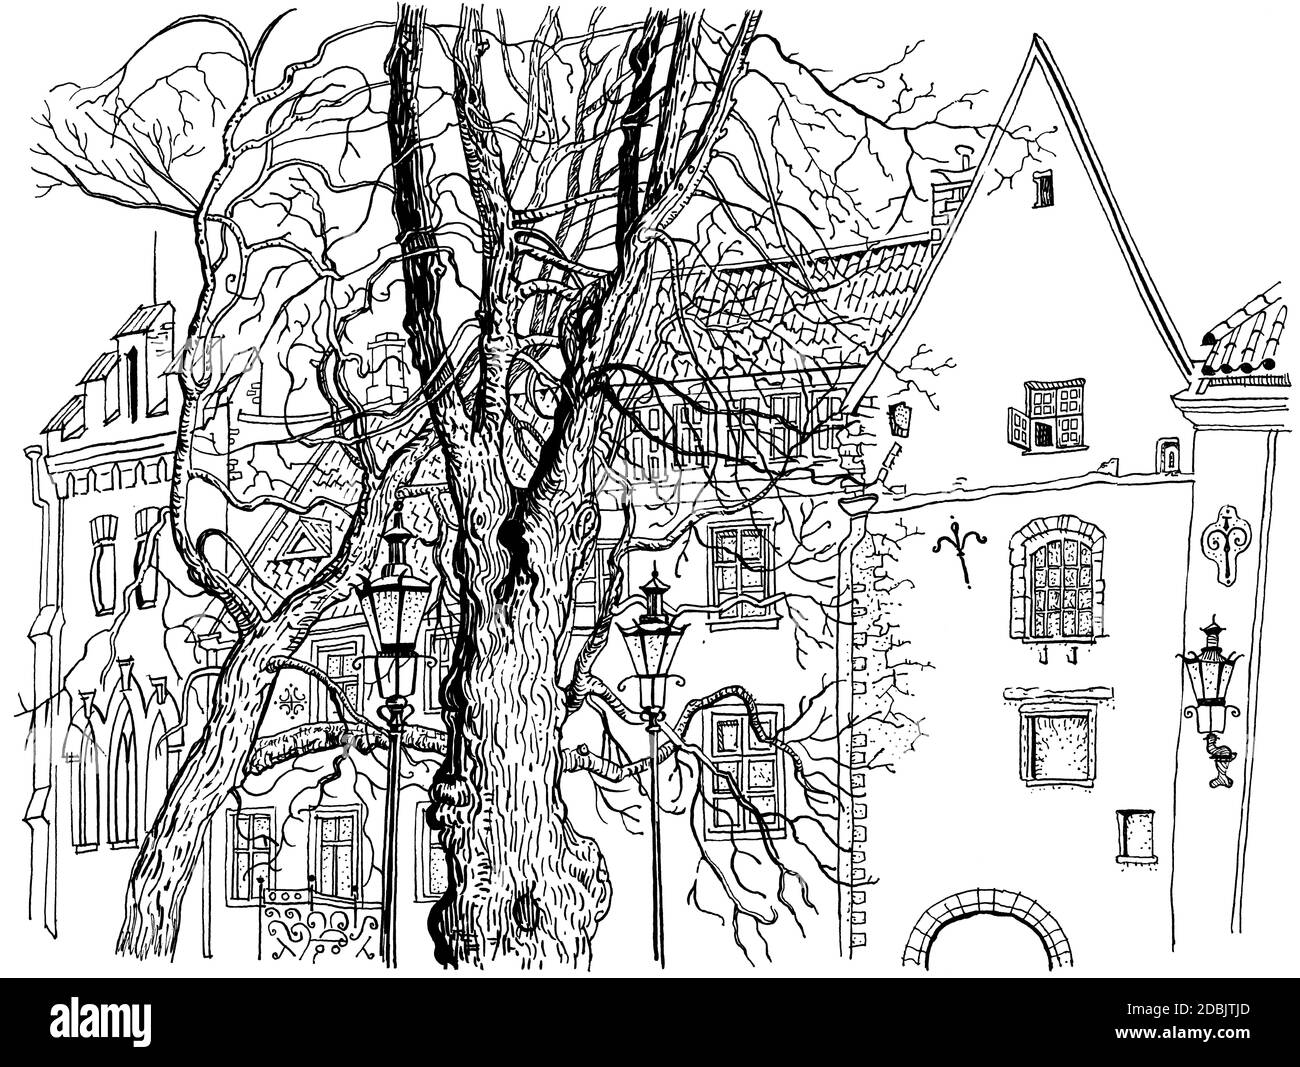 Blick auf die Altstadt von Tallinn. Handgezeichnete Grafik-Stil Tinte Stift Illustration. Historische Architektur, mittelalterliche Häuser, Bäume. Baltische Staaten Stockfoto